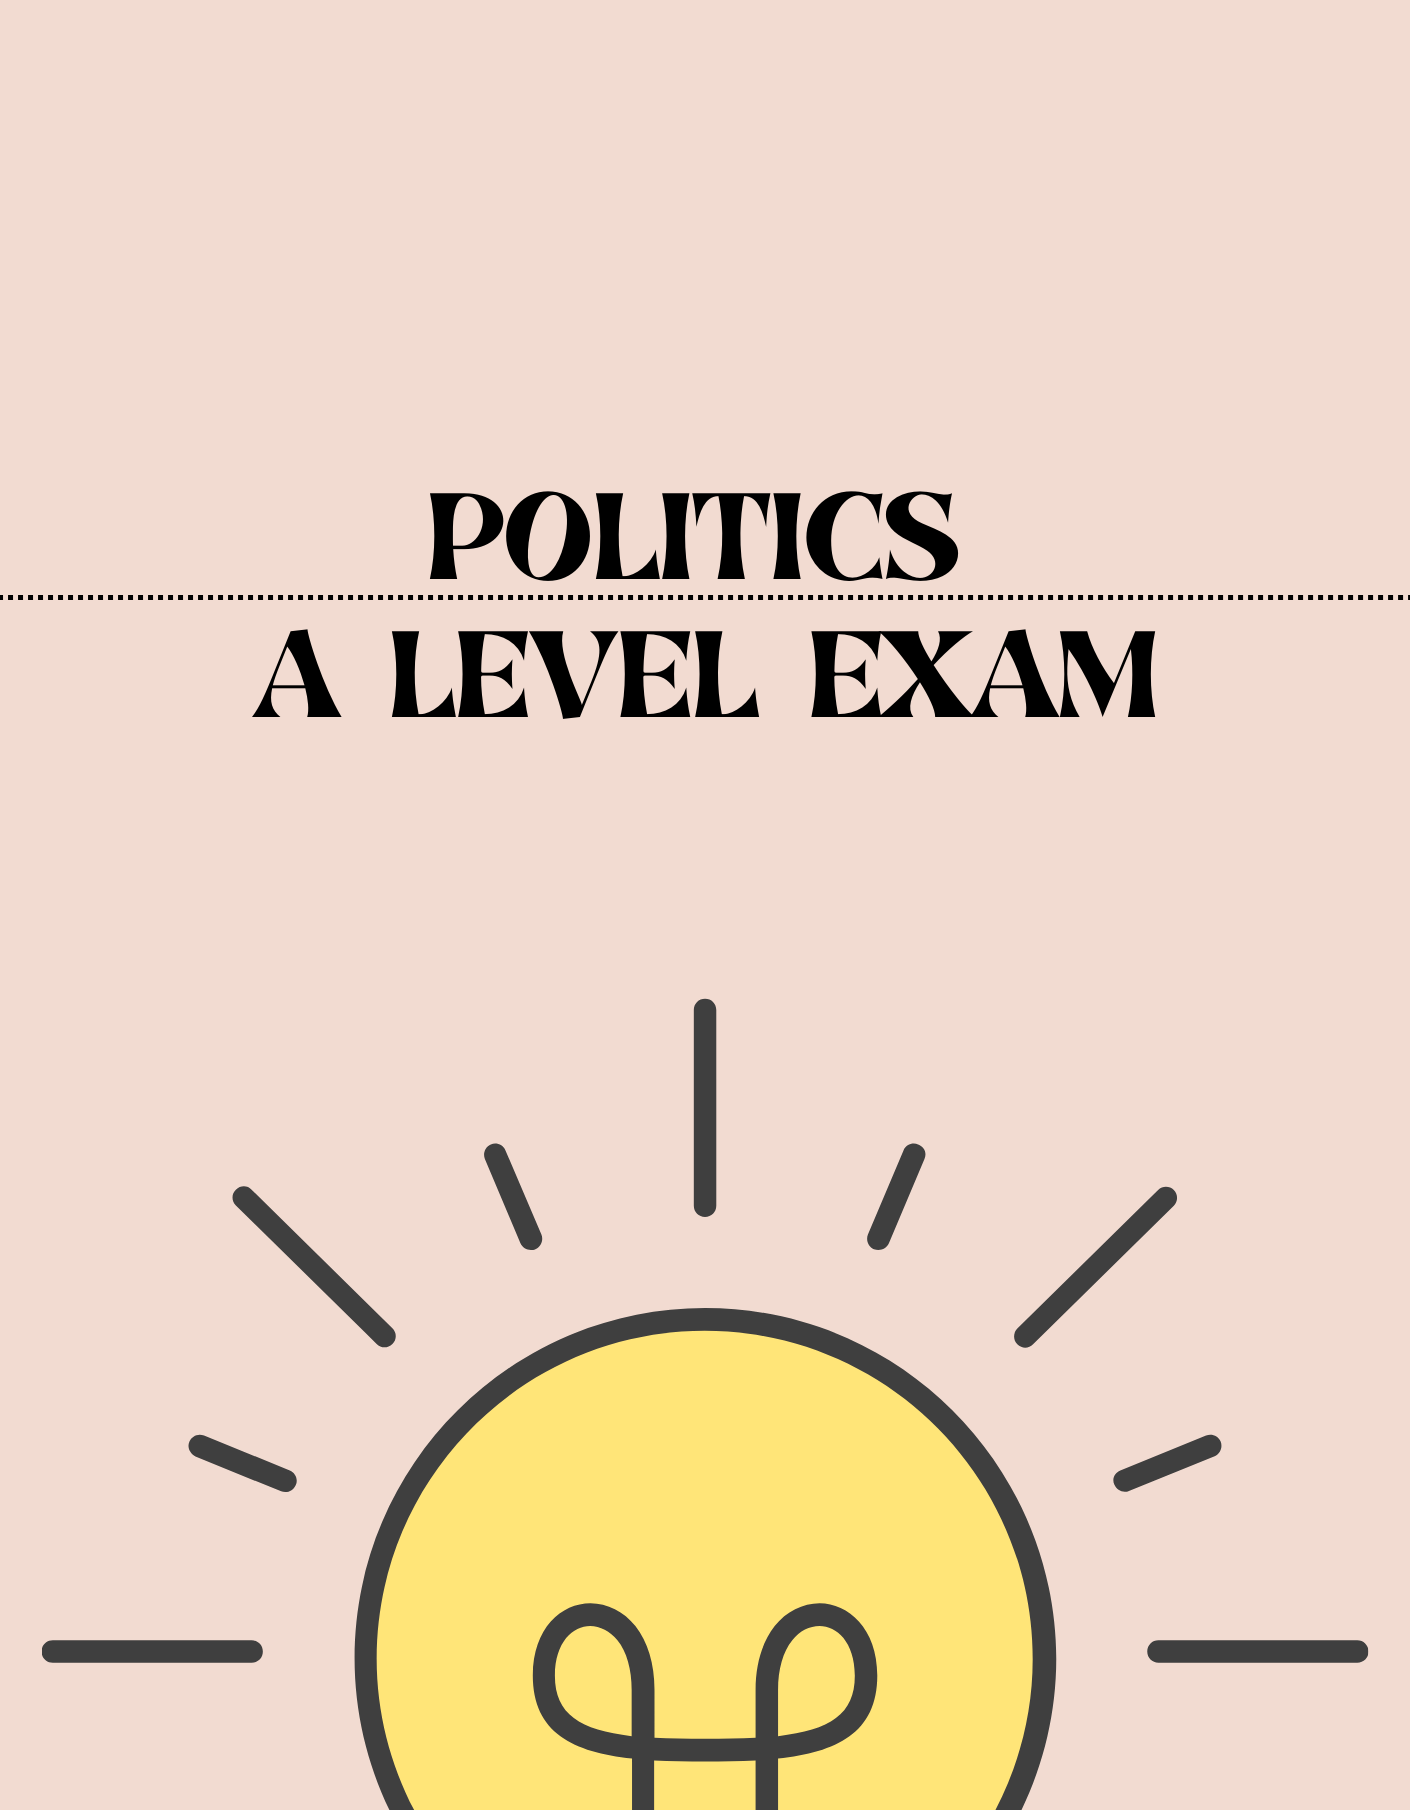 A Level - Politics Exam - Exam Centre Birmingham Limited